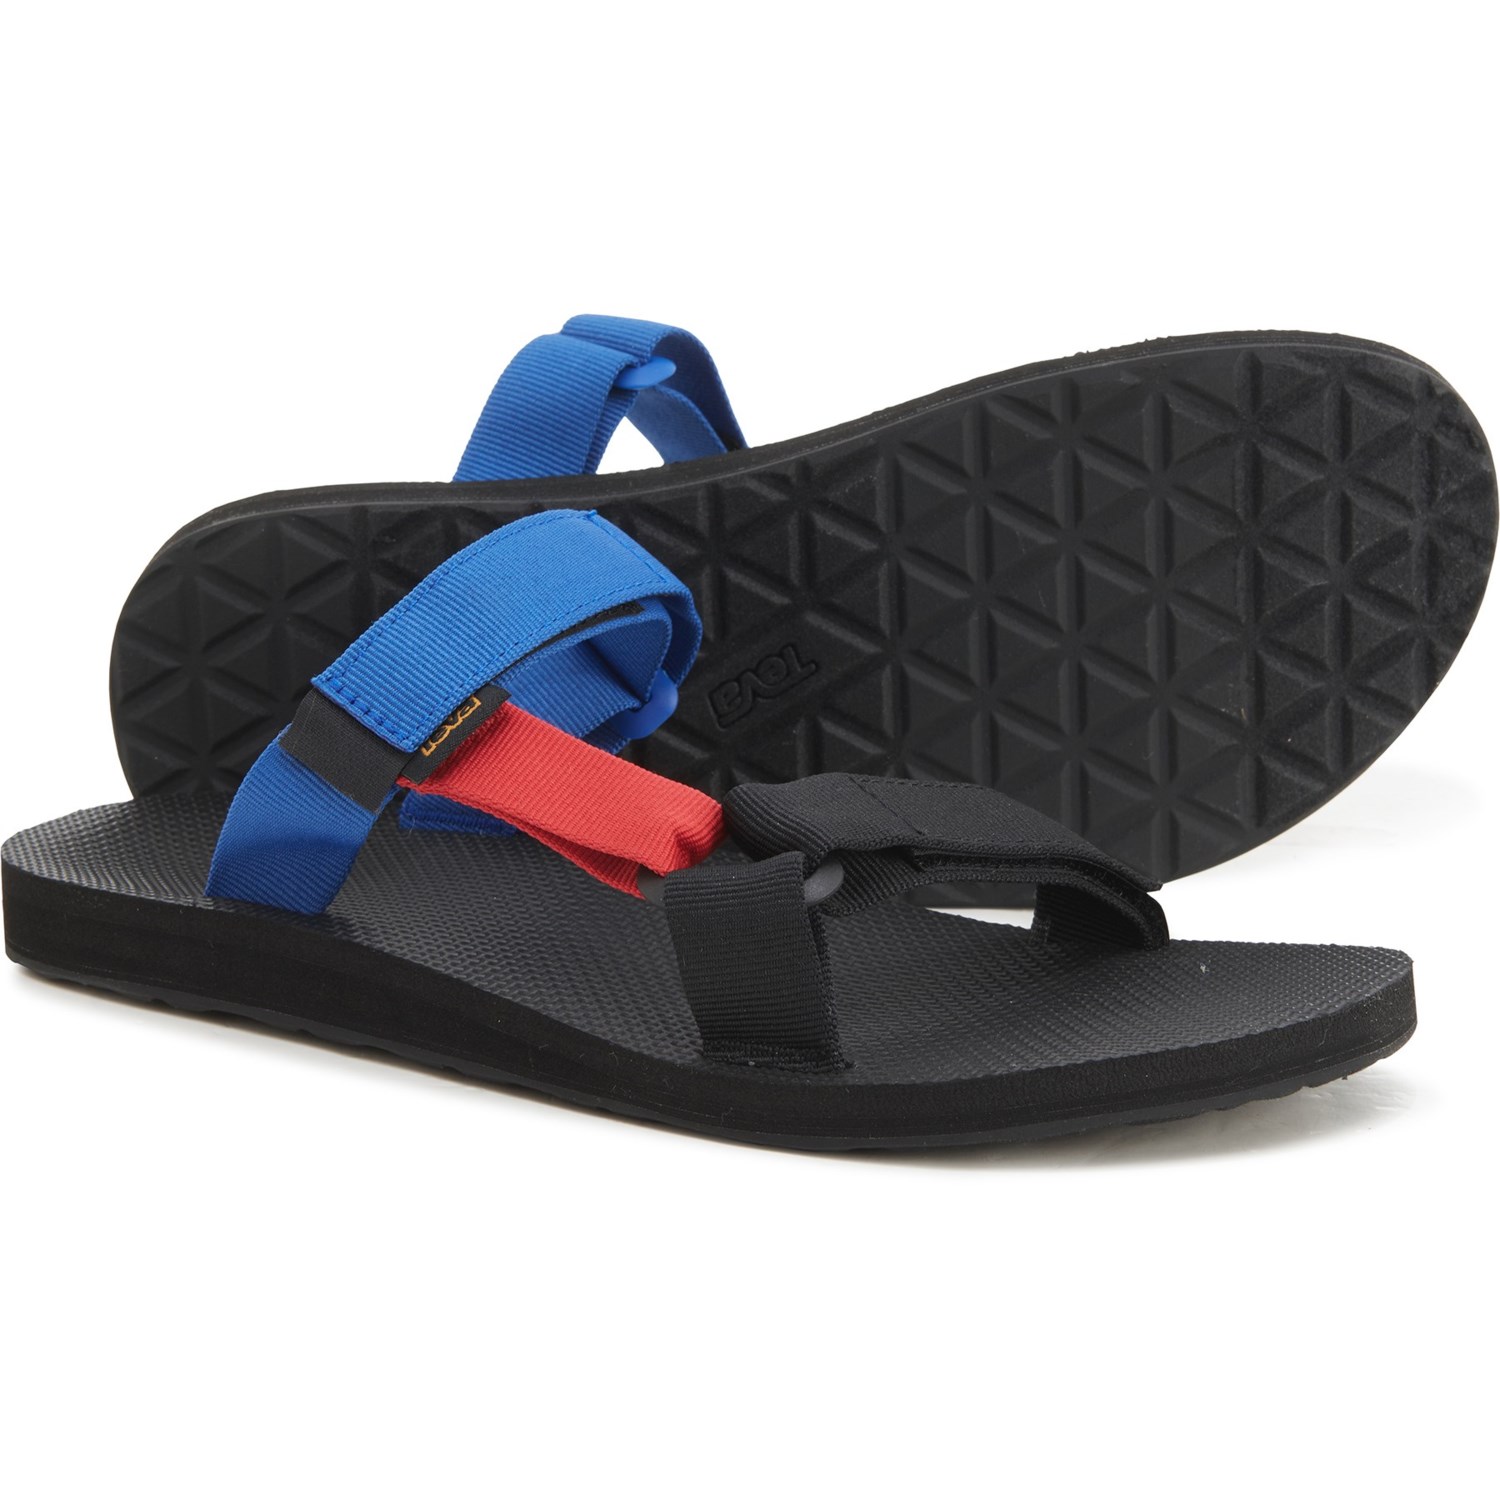 Teva Men's Universal Slide Sandals (Bright Multi)